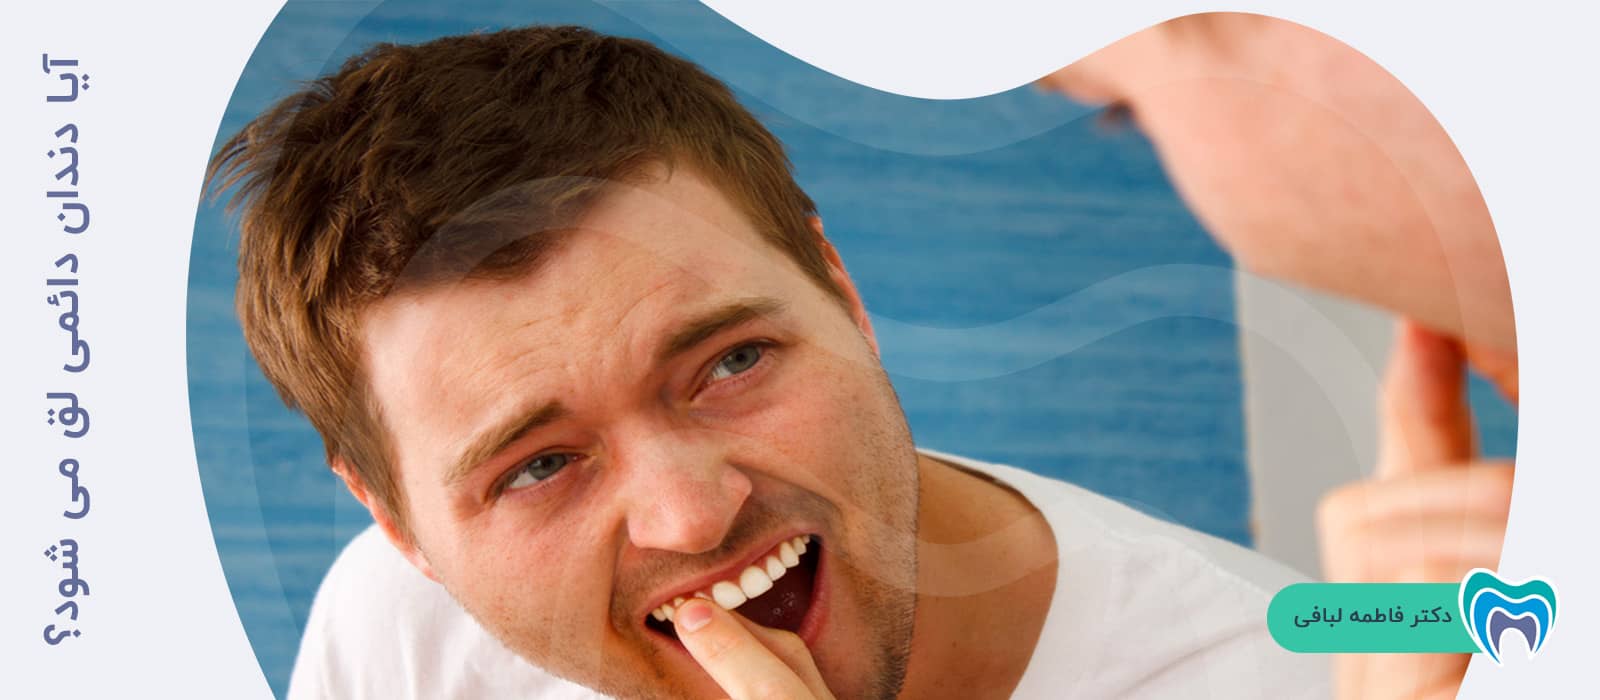 آیا دندان دائمی لق می شود؟